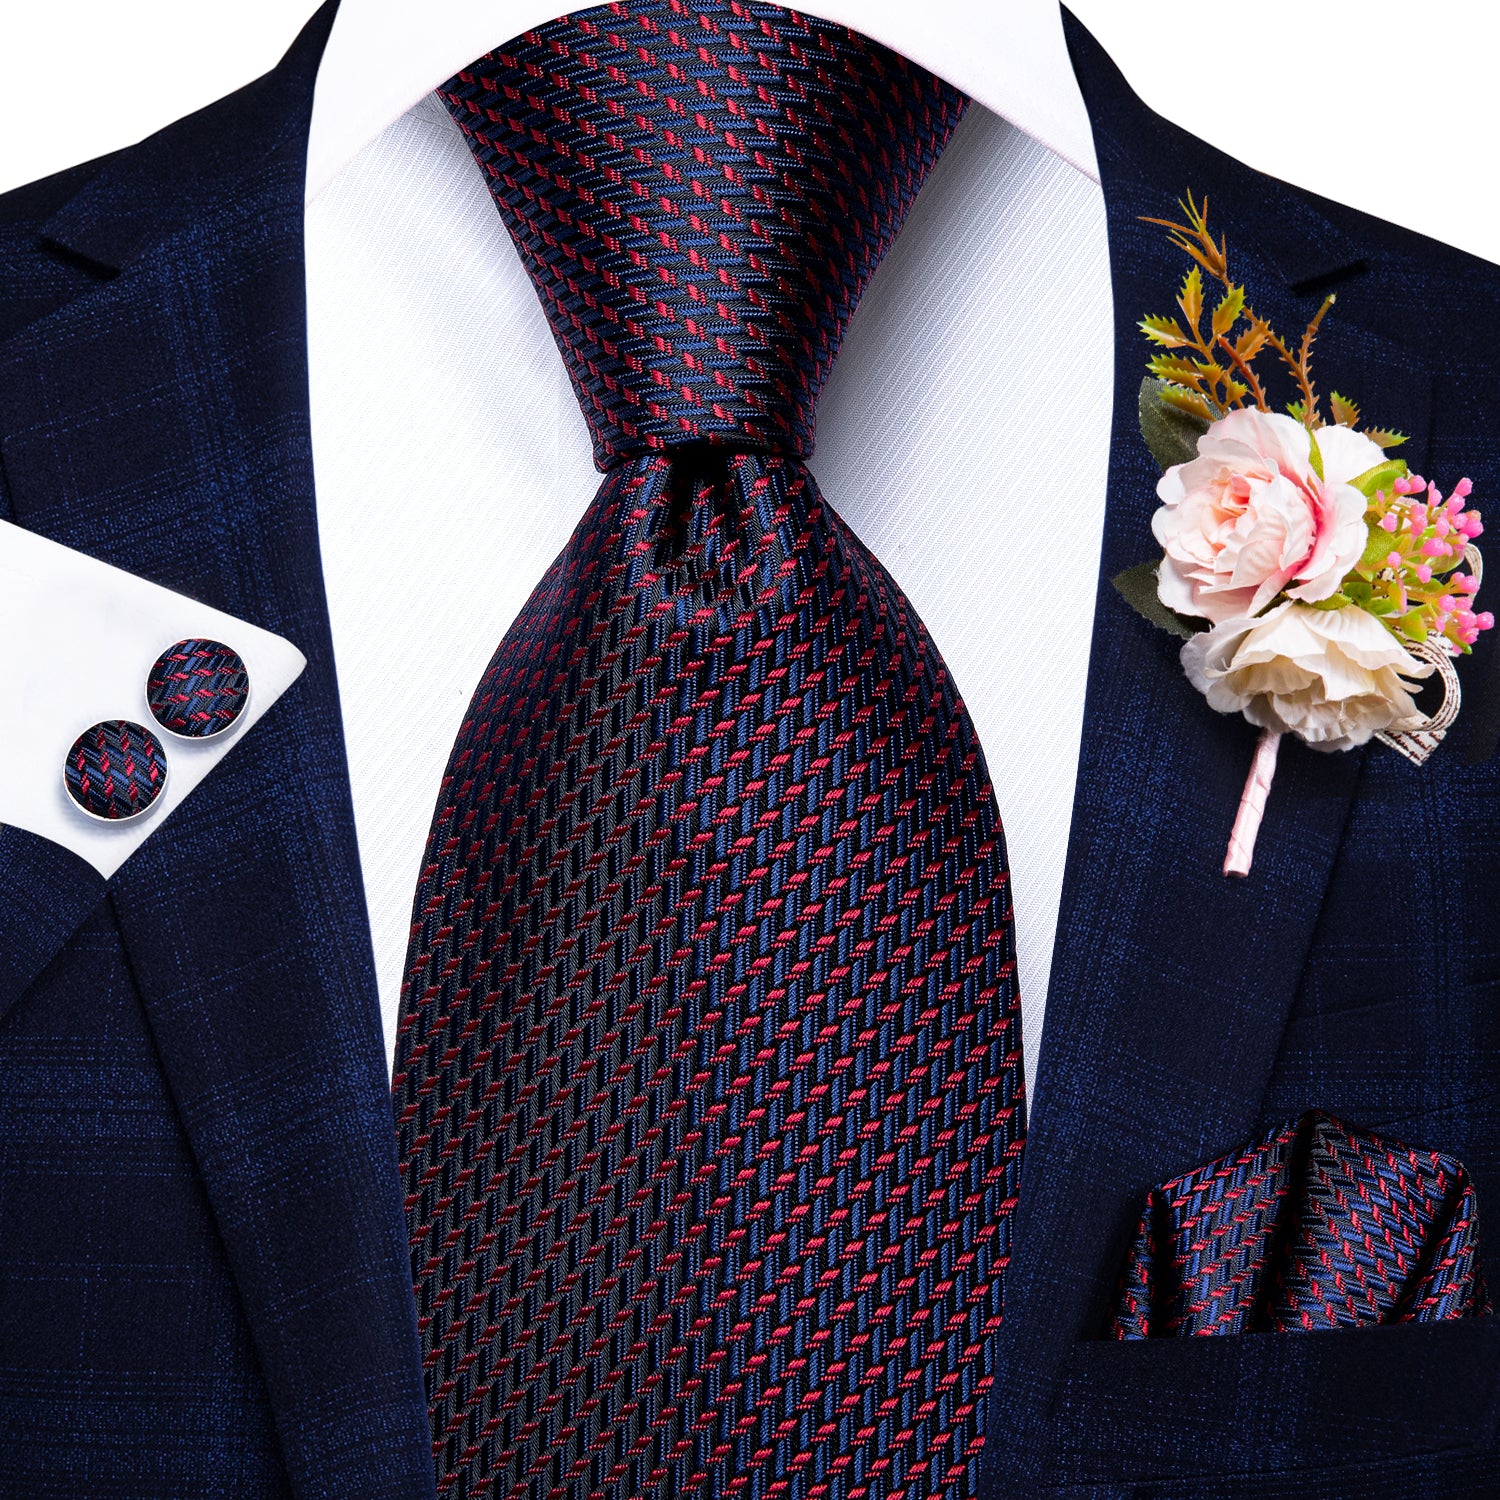 Blue Red Striped Tie Handkerchief Cufflinks Set with Wedding Brooch